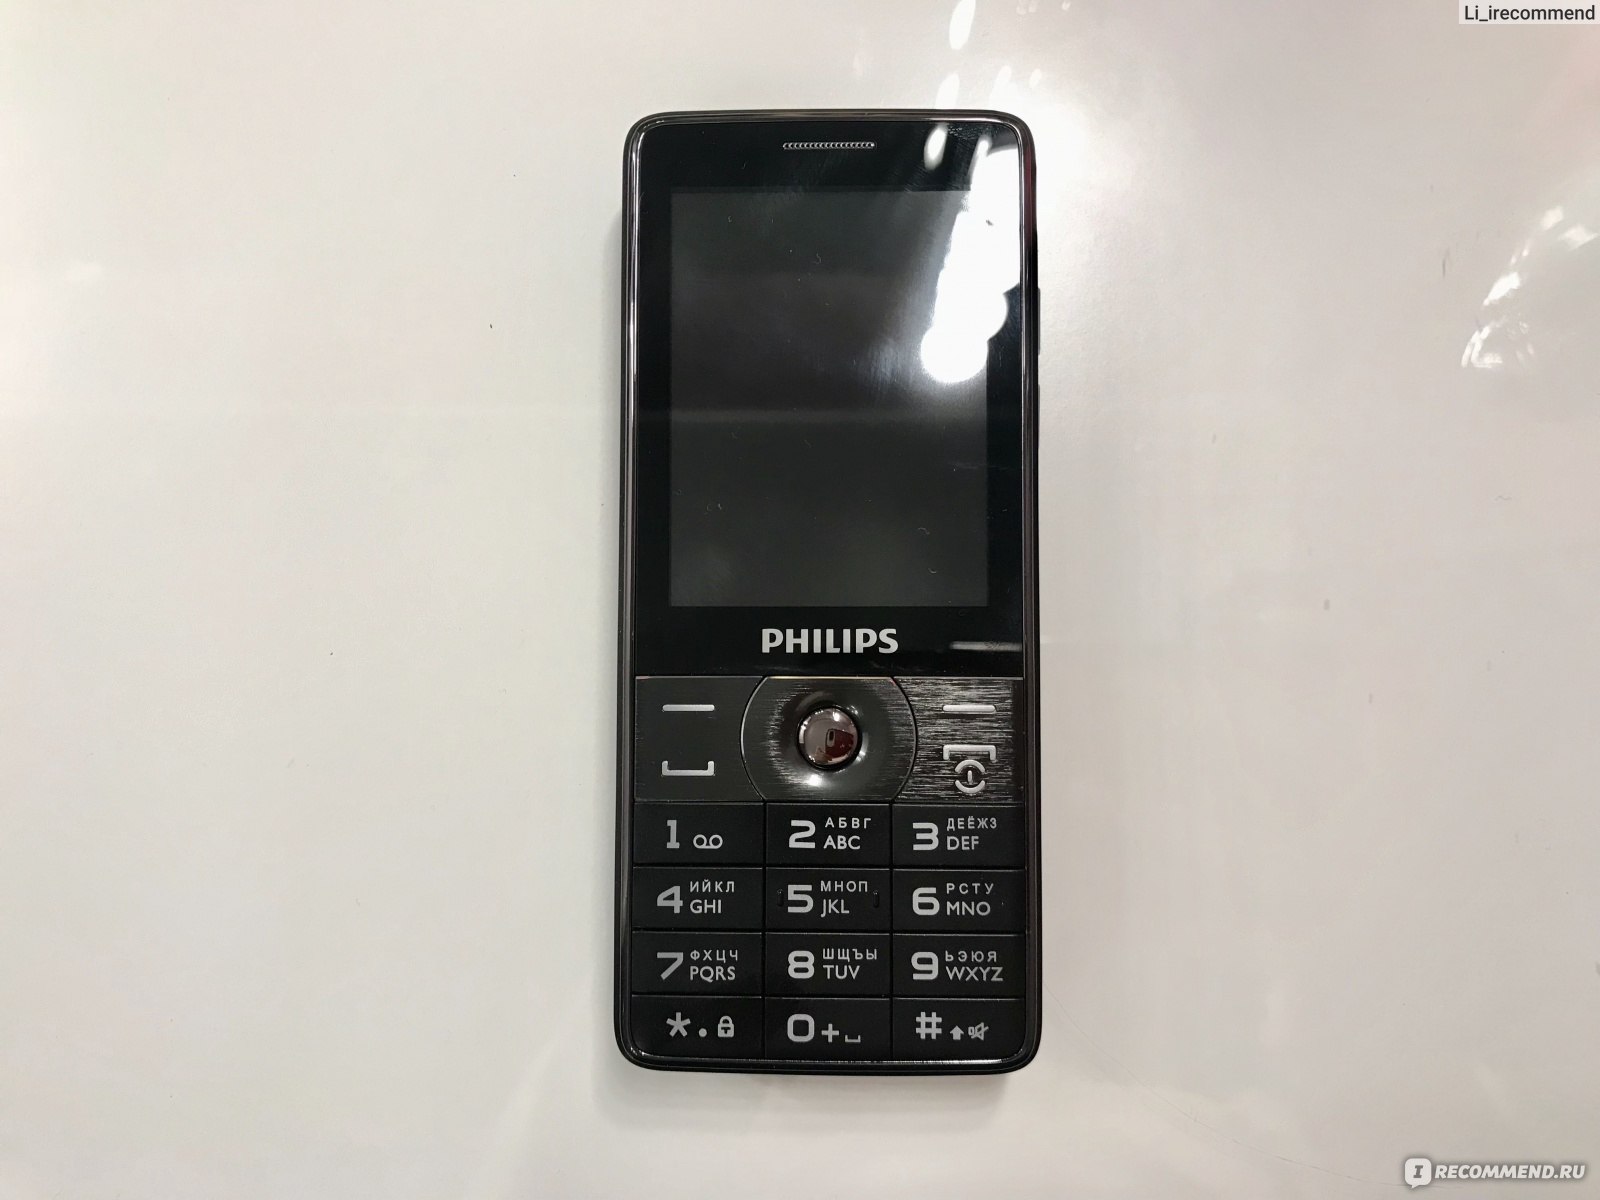 Филипс телефоны 2 сим. Philips Xenium e570. Кнопочный Филипс е570. Philips Xenium е570. Телефон Филипс Xenium е570.